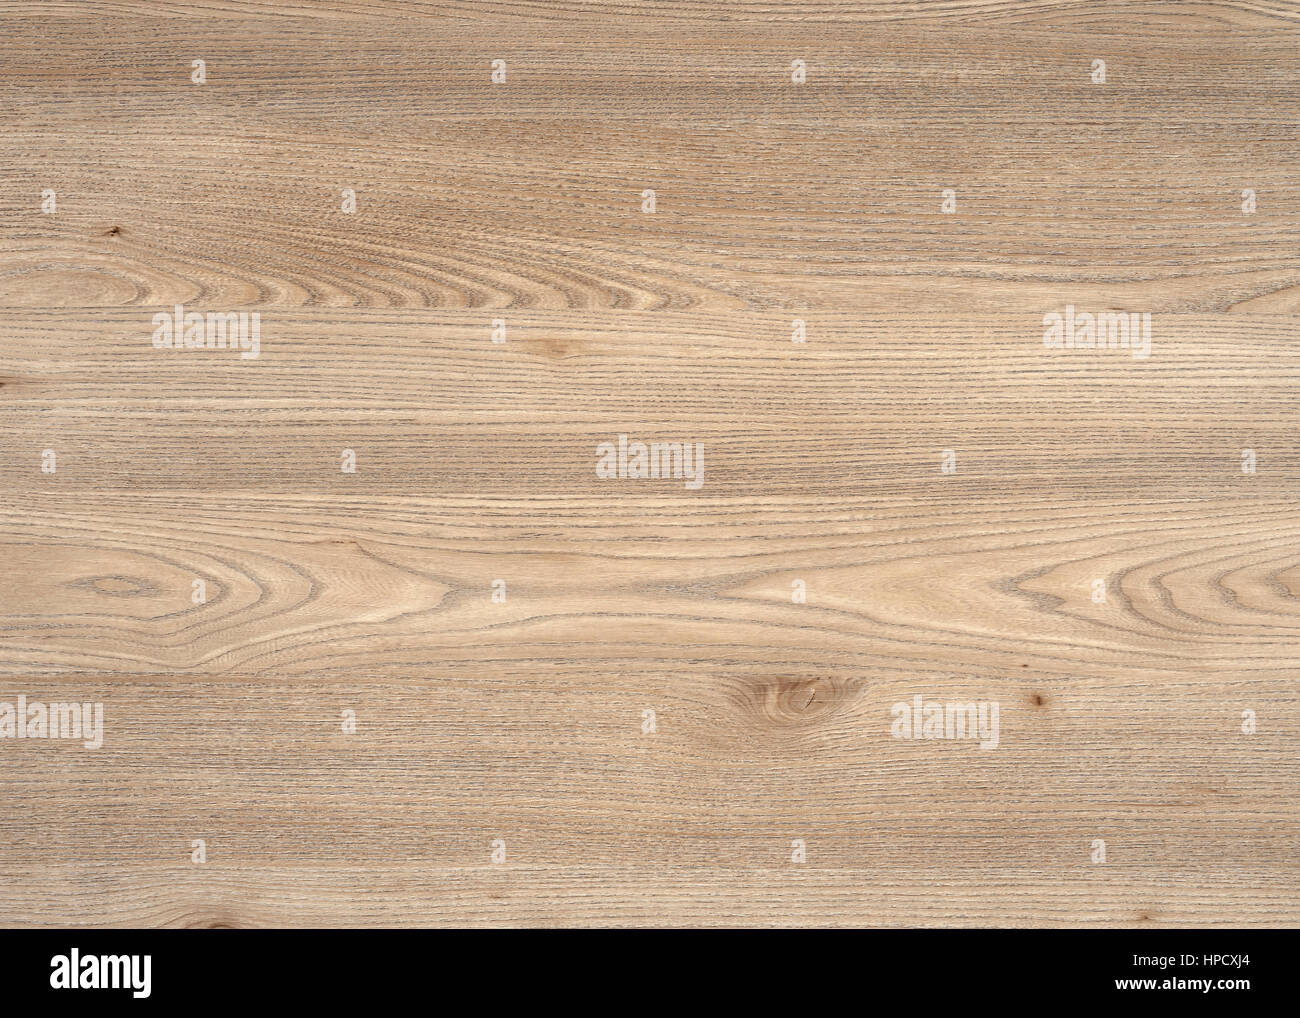 Une image complète de la surface du grain de bois brun Banque D'Images